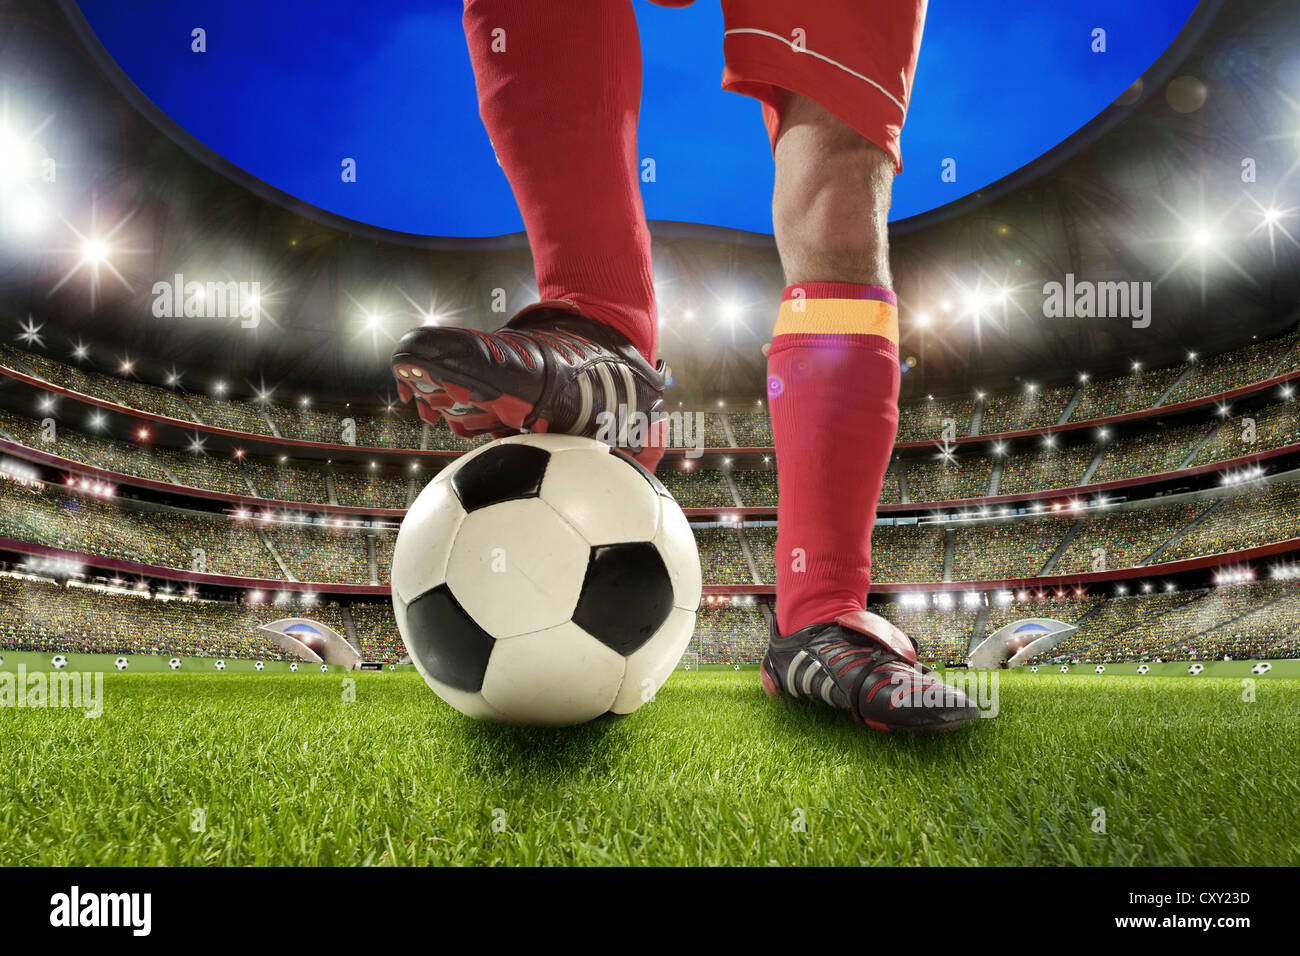 Soccer player, legs, soccer ball, soccer stadium Stock Photo